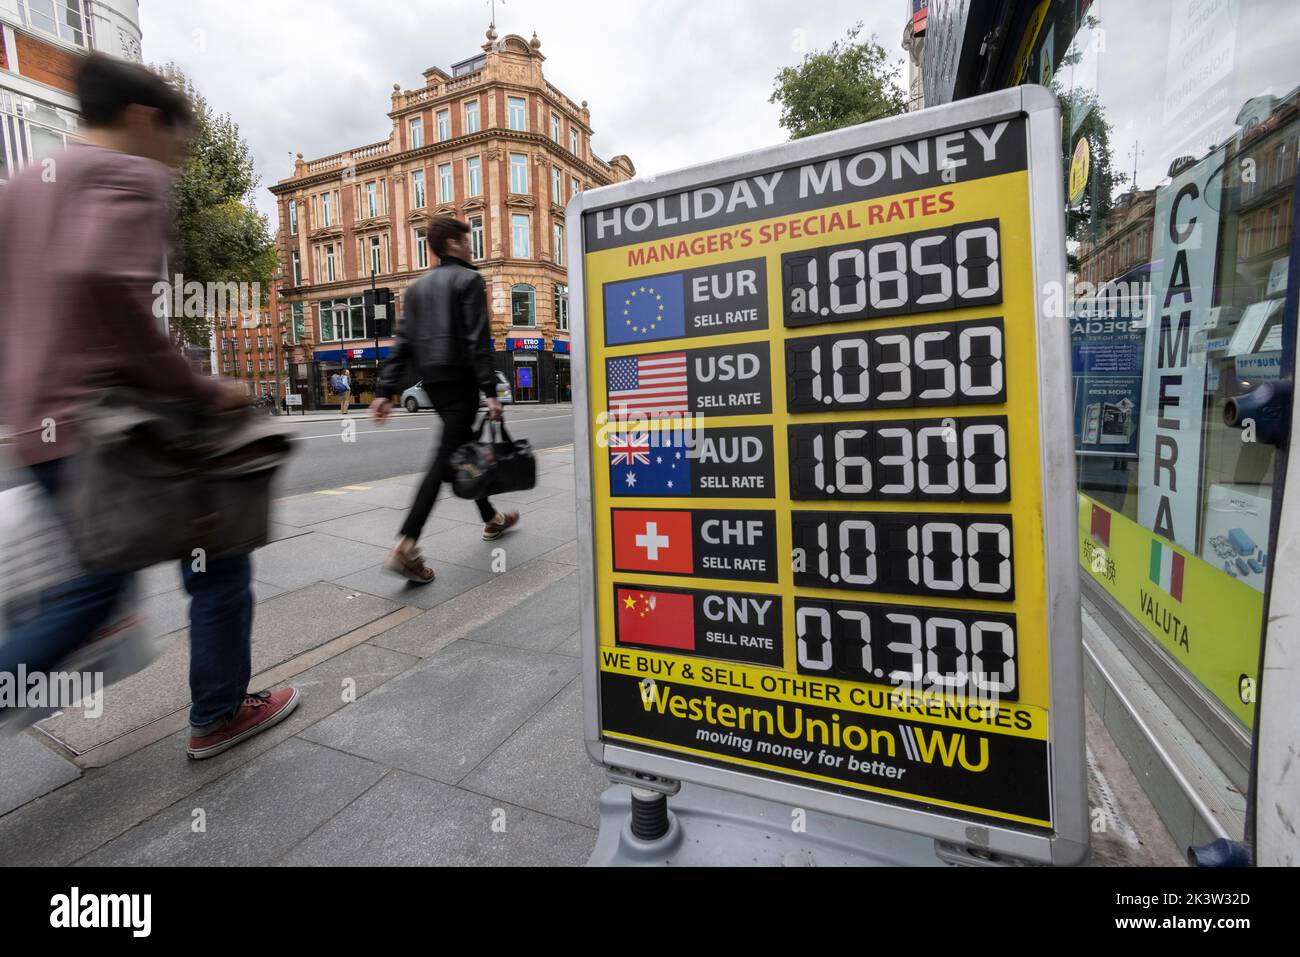 Les taux de change de l'argent des fêtes annoncés en dehors d'un bureau de change alors que la livre britannique a atteint un niveau record à 1,03 $, Tottenham court Road, Londres, Royaume-Uni Banque D'Images